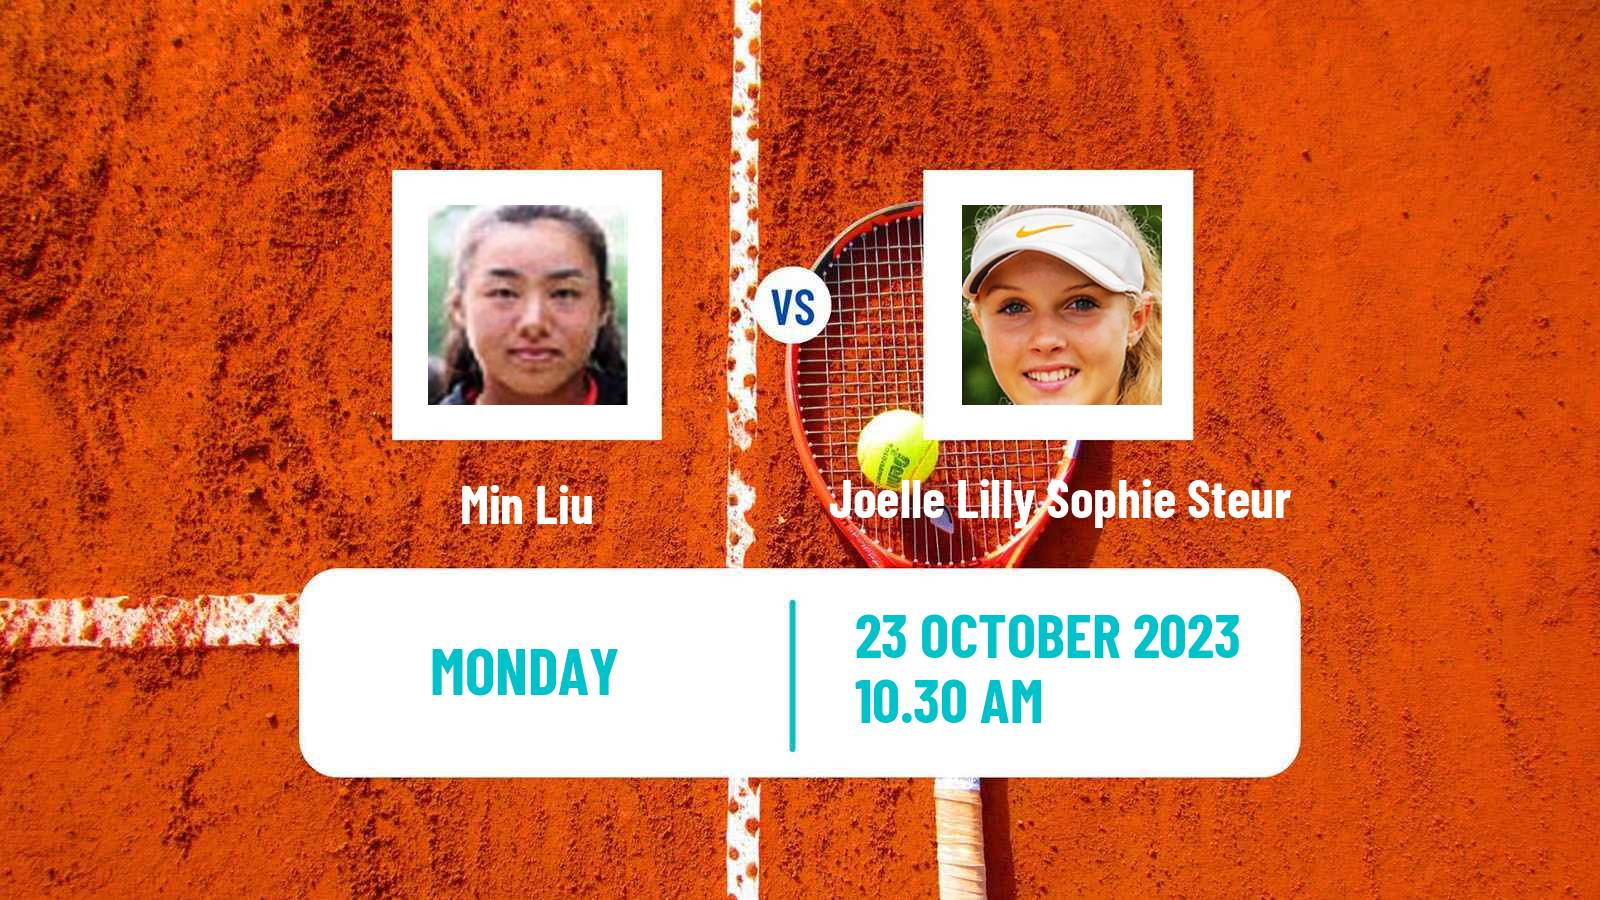 Tennis ITF W15 Villena Women Min Liu - Joelle Lilly Sophie Steur